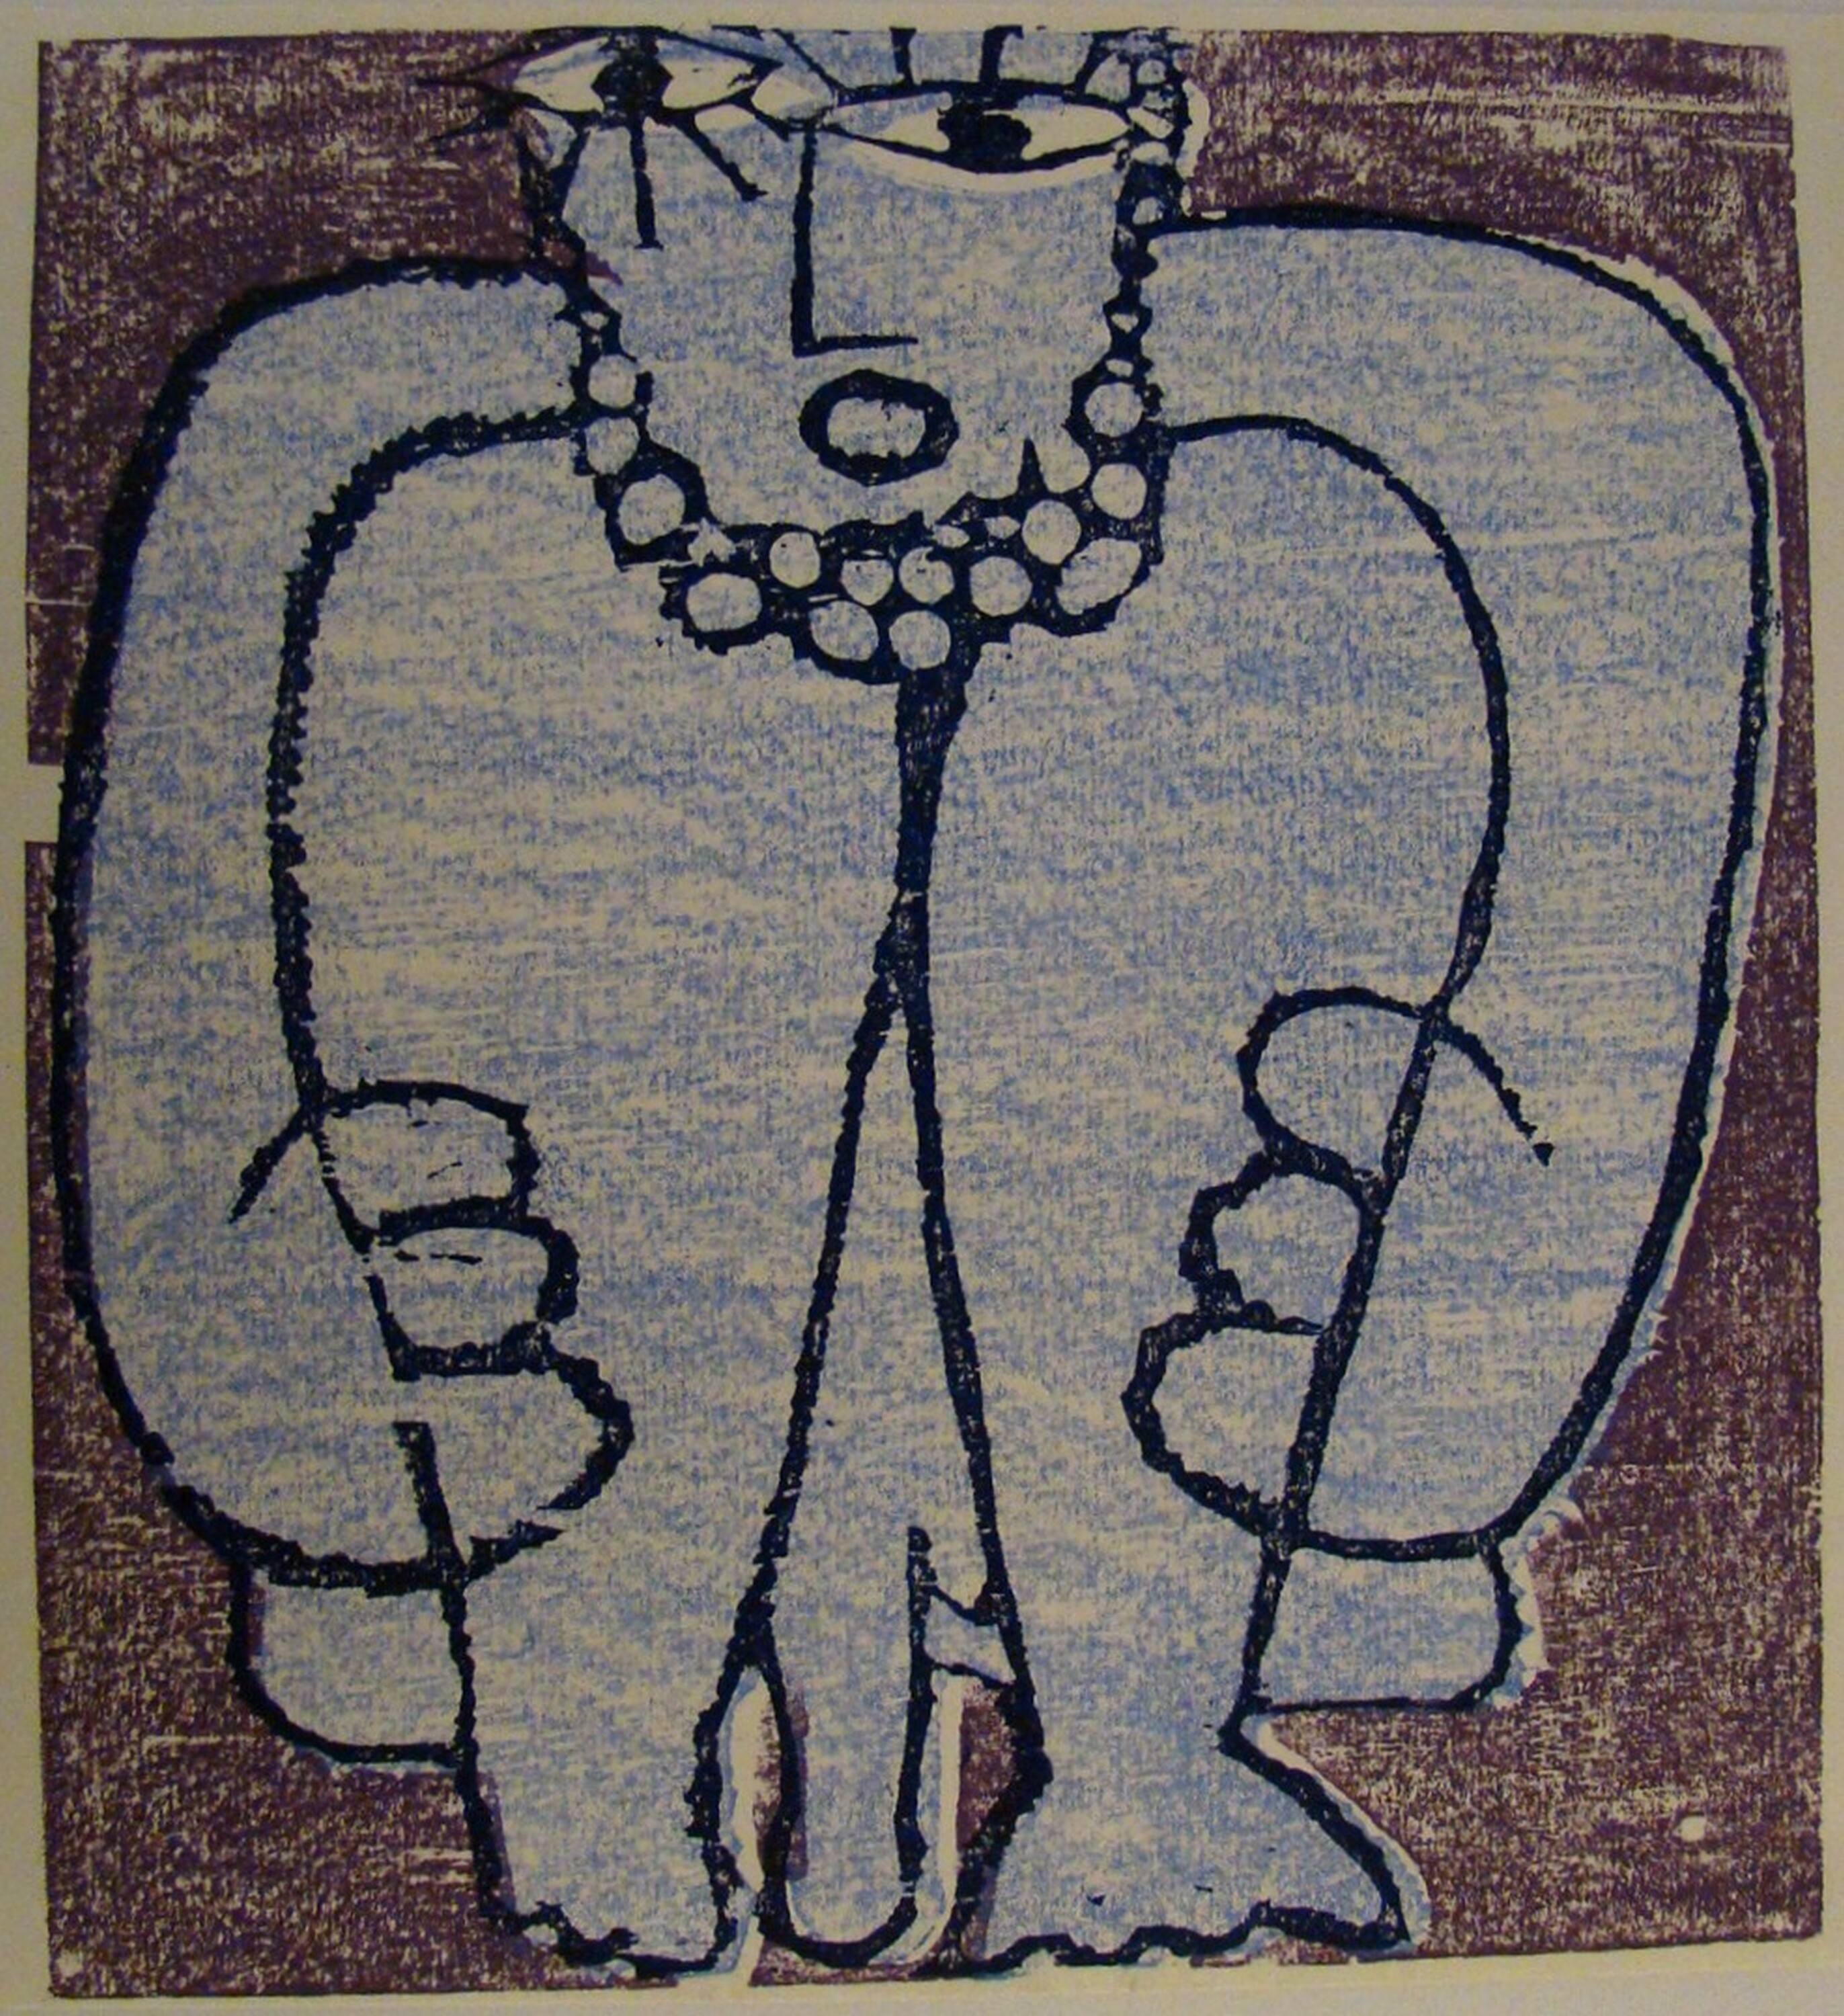 Grafik: Männliche hockende Figur (Kulturhistorisches Museum Görlitz CC BY-NC-SA)